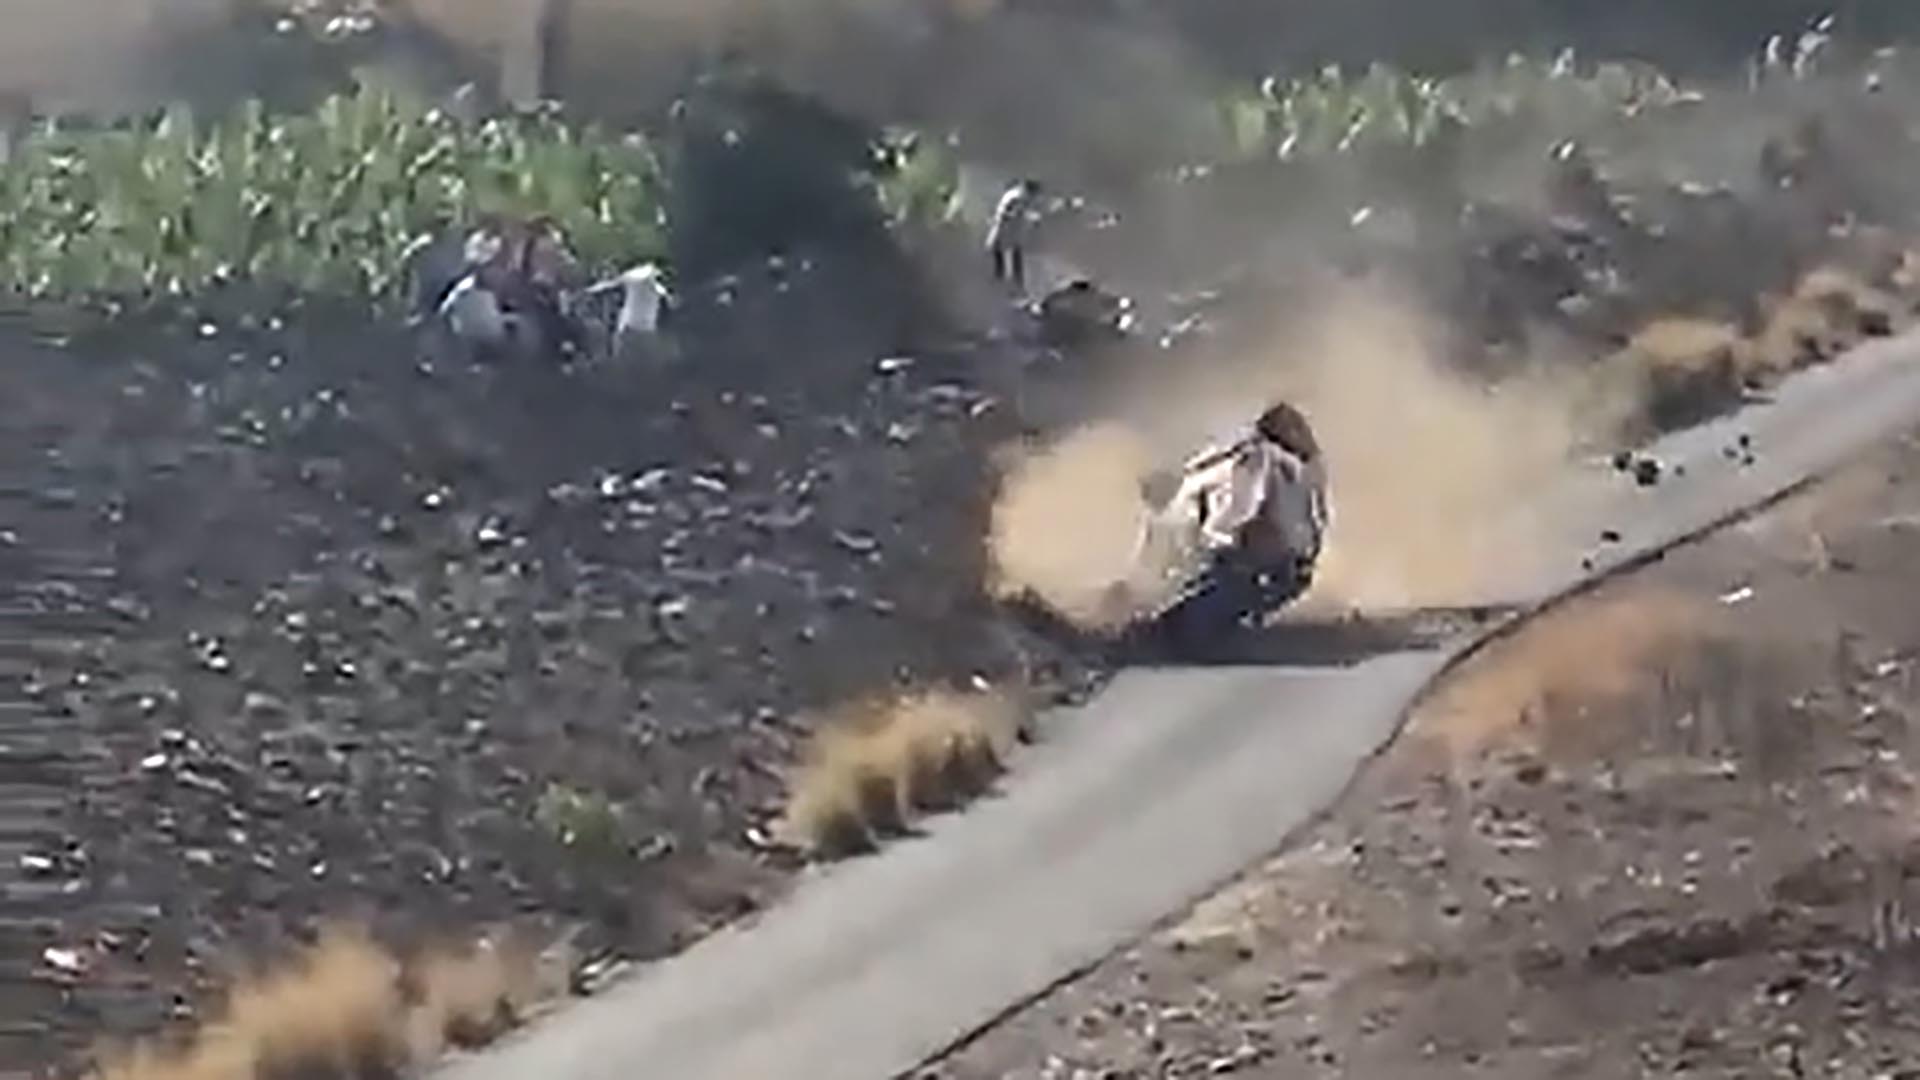 Un Toyota Starlet 1.3 que llevaba el número 44 perdió el control, se salió de la carretera y arrolló de manera brutal a dos personas en una prueba de rally en Gran Canaria.